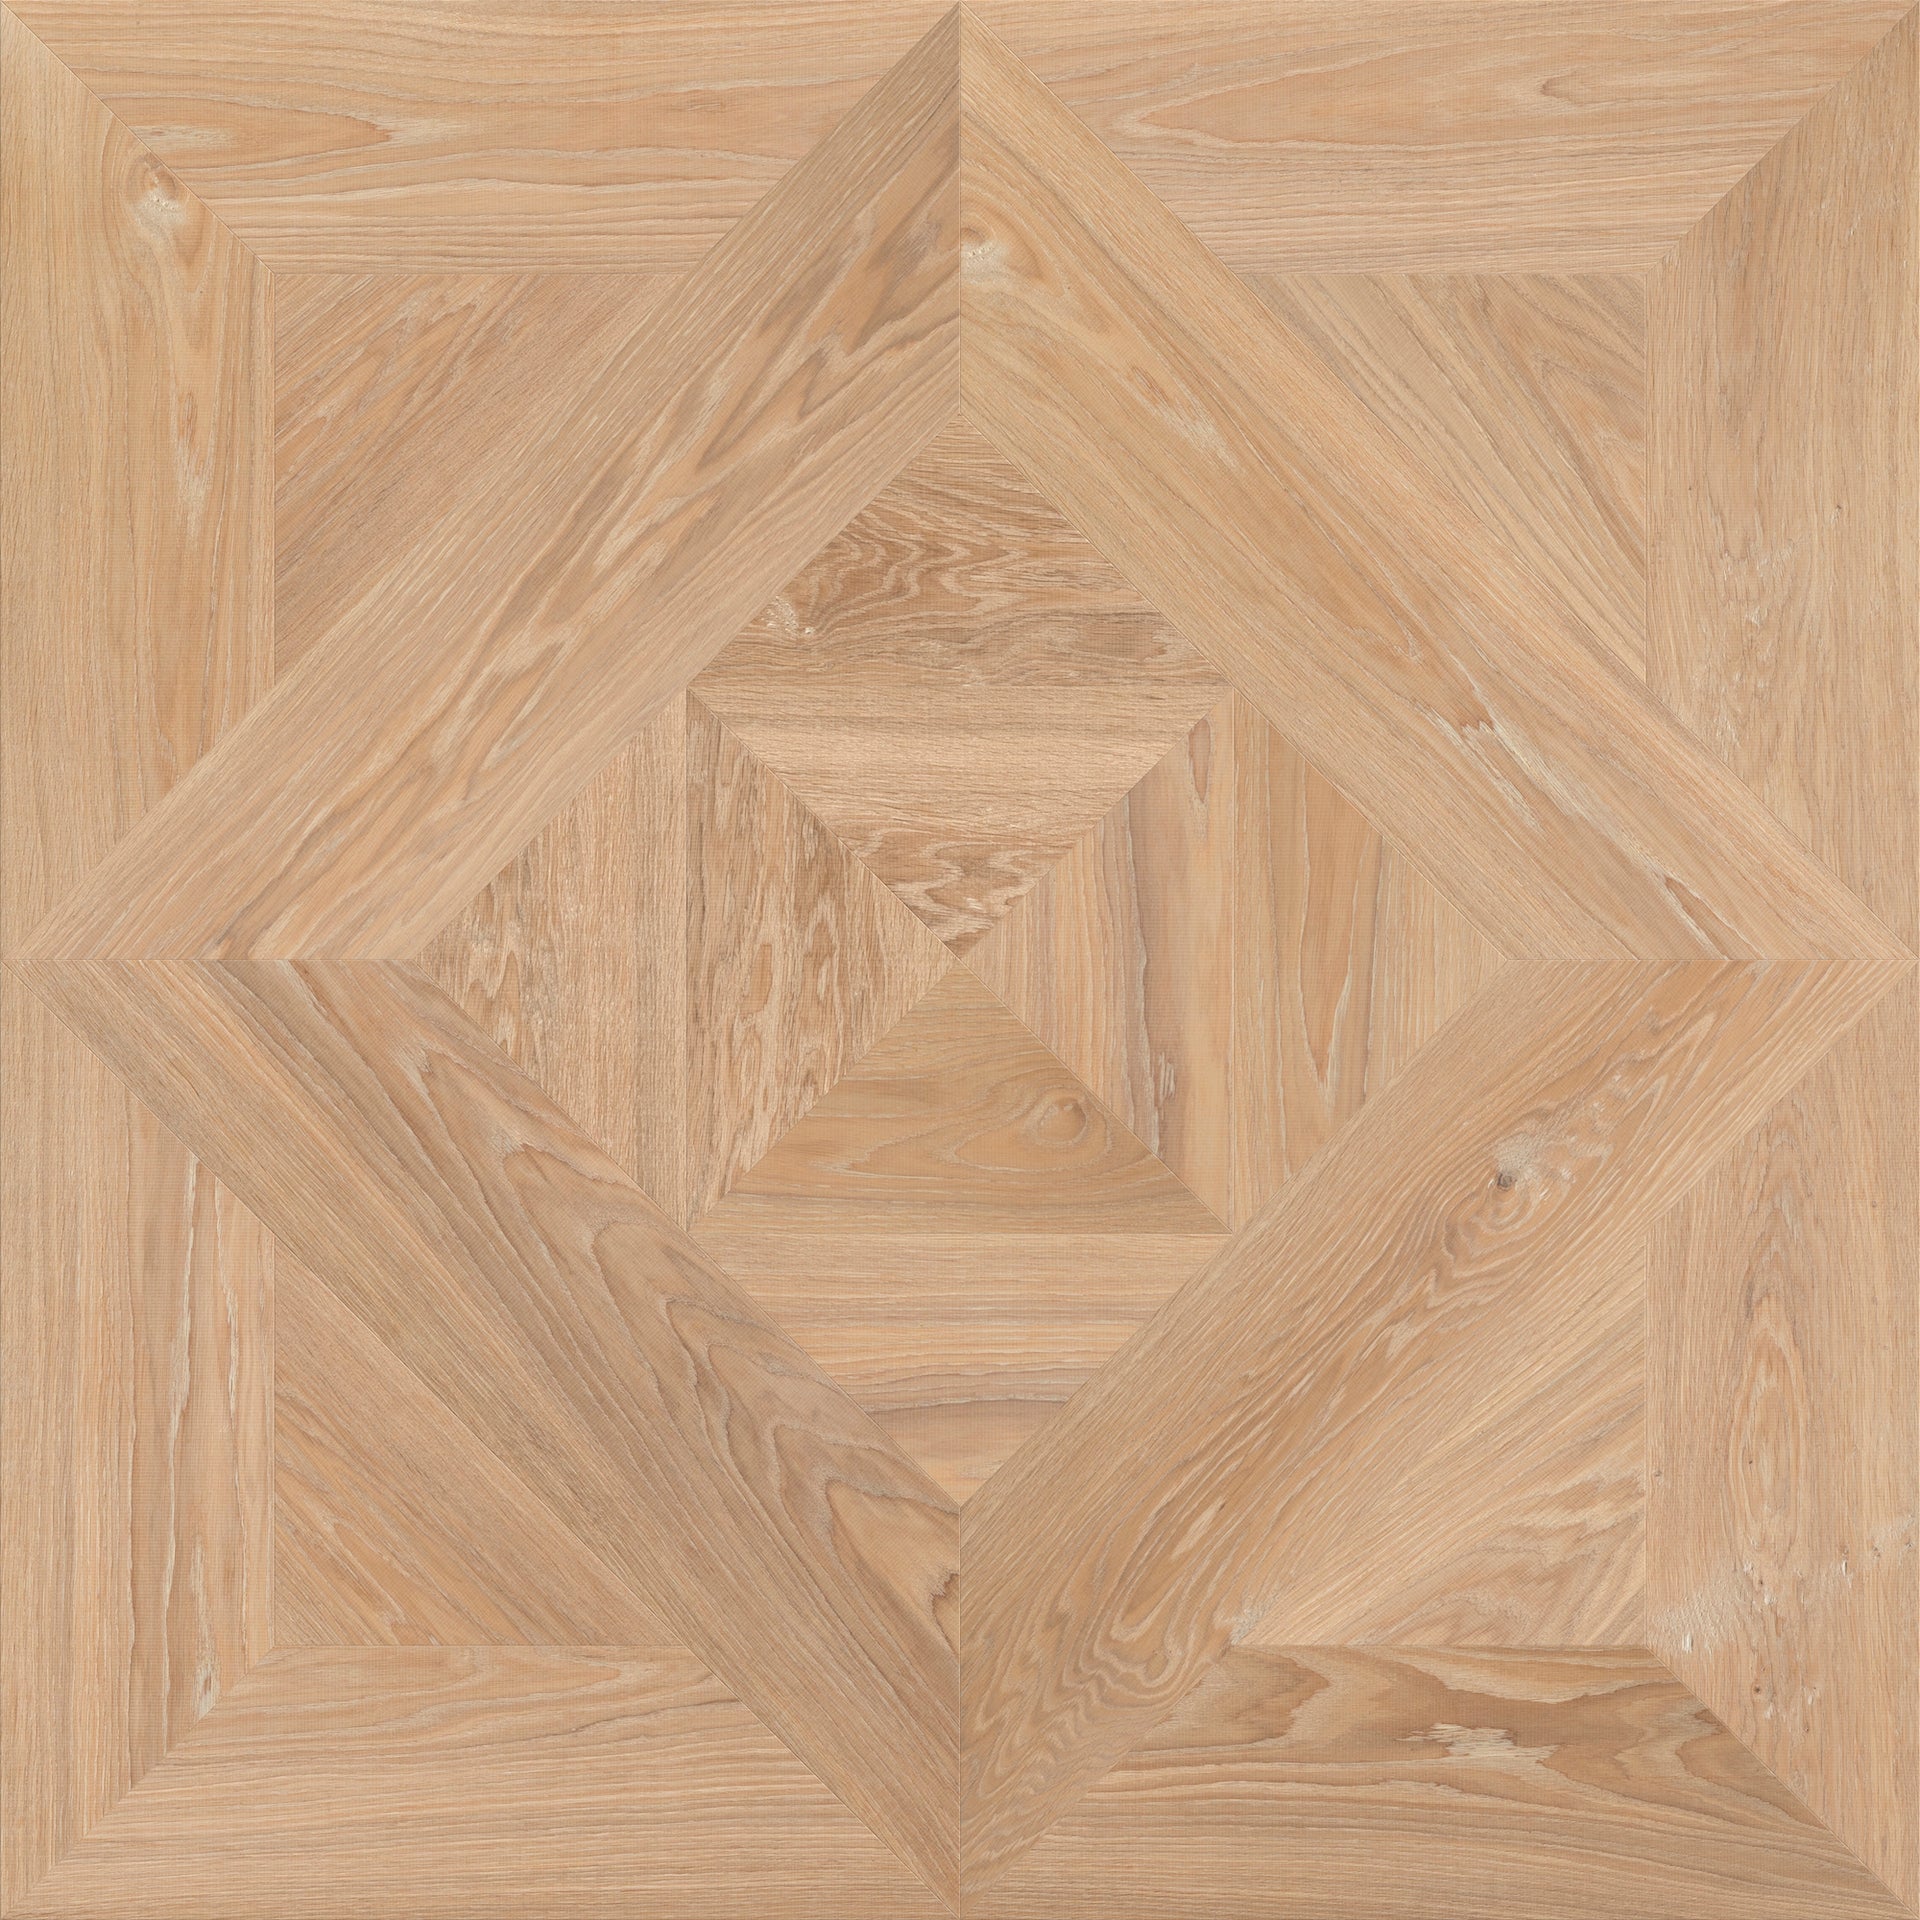 Chaumont patroon houten vloeren paneel van Uipkes